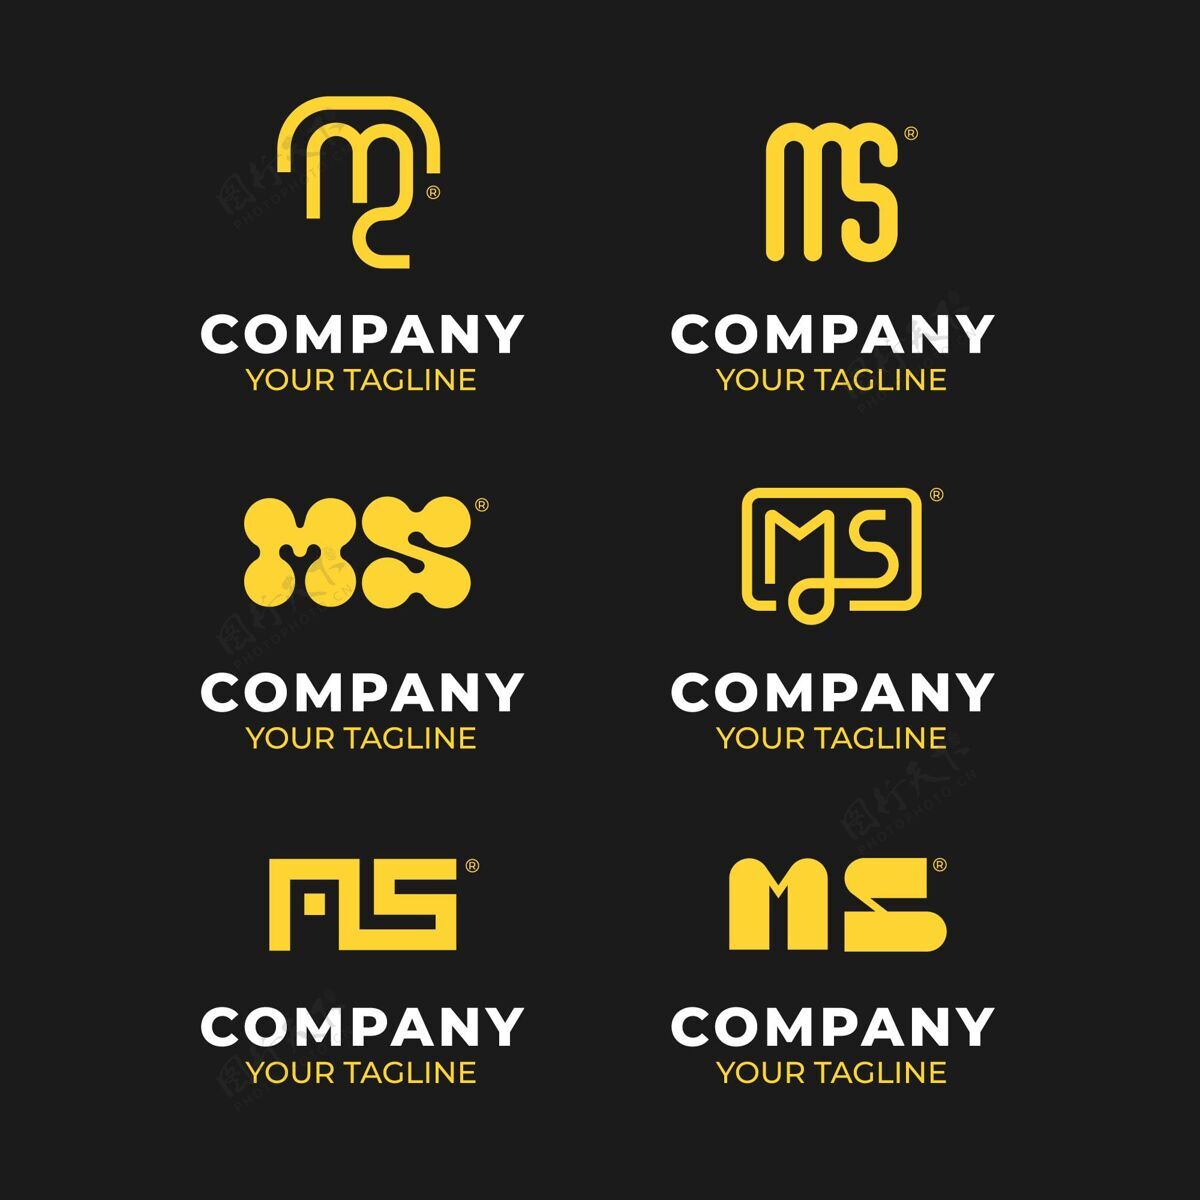 企业标识平面设计ms标志集企业标识品牌企业